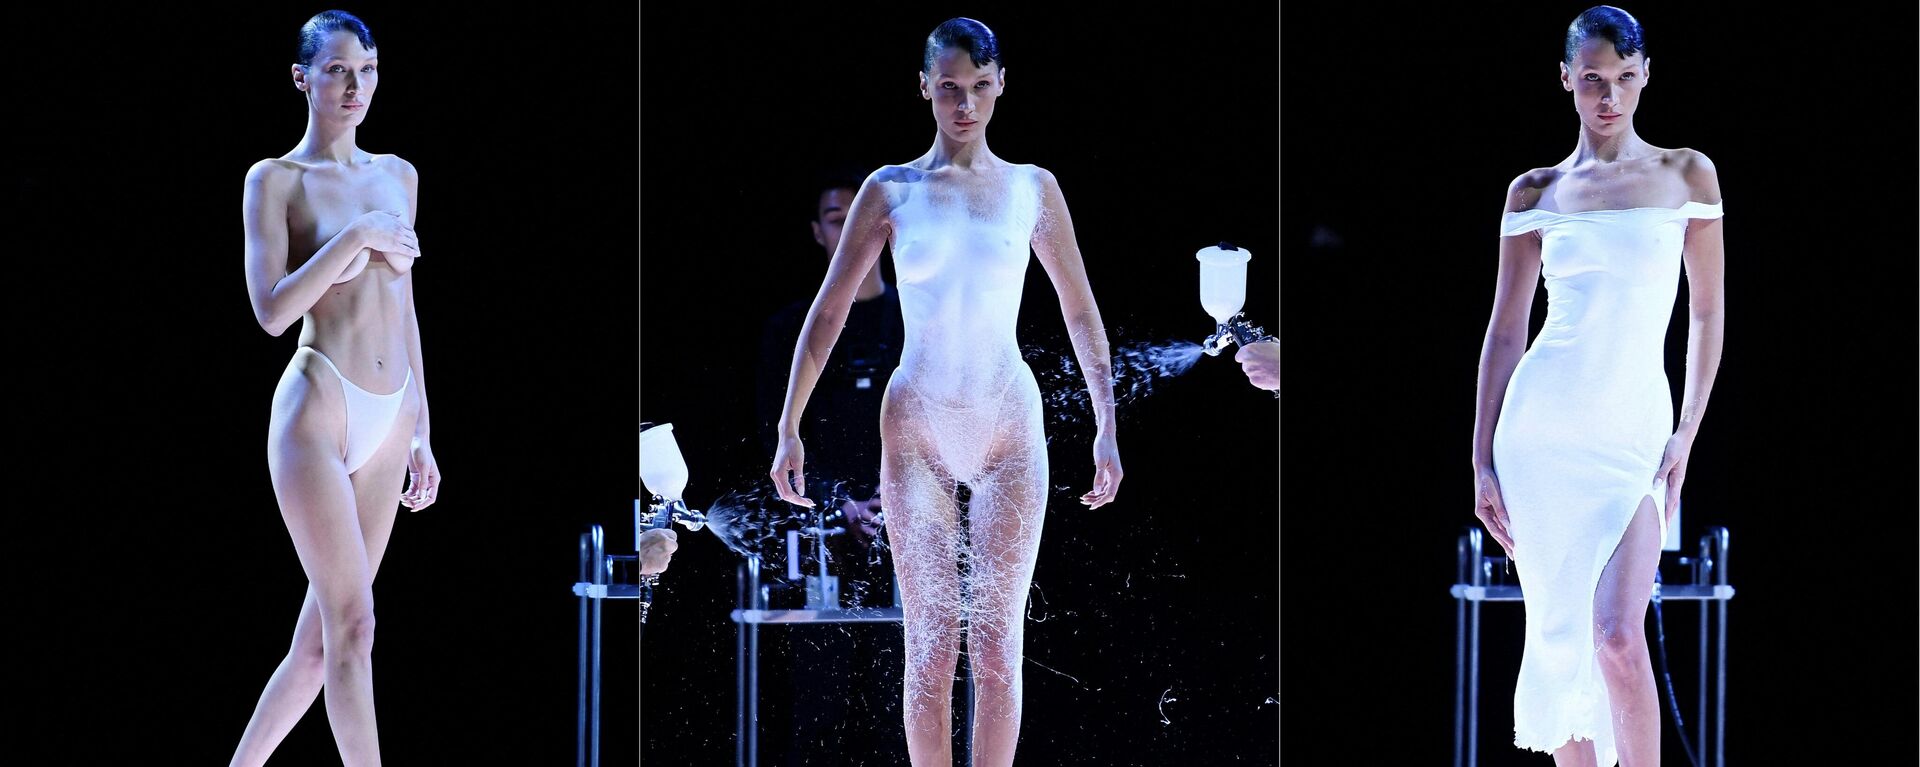 Моделm Белла Хадид во время модного показа дизайнера Coperni на Недели моды в Париже 2022  - Sputnik Кыргызстан, 1920, 04.10.2022